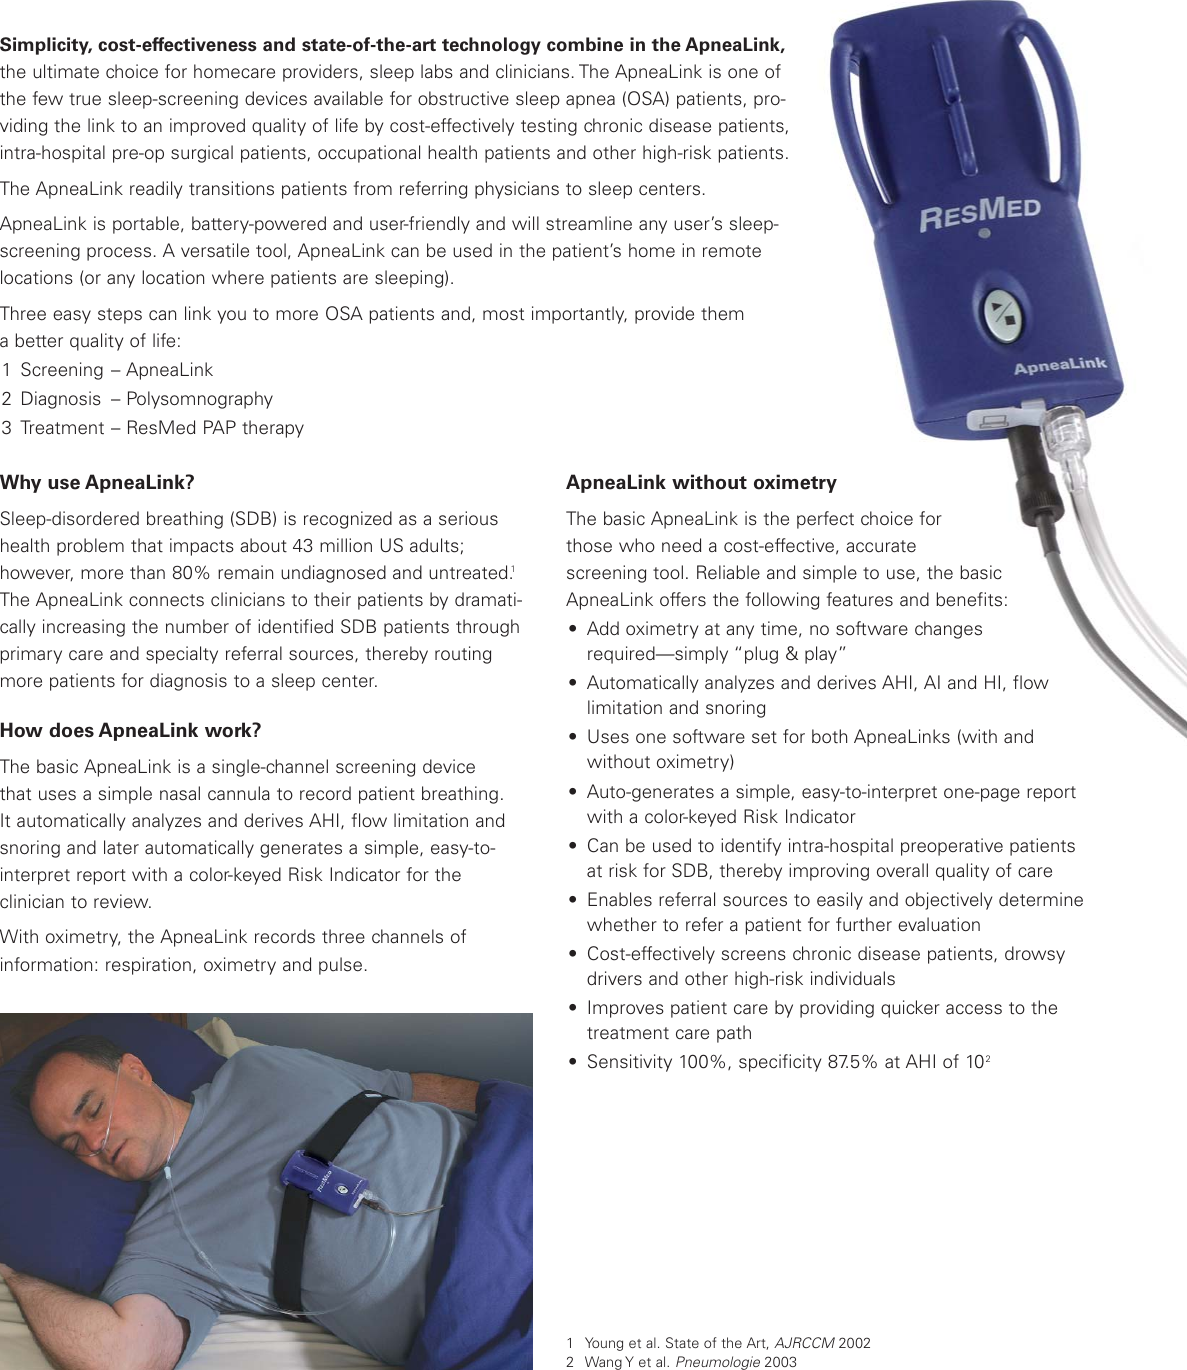 Page 2 of 4 - Resmed Resmed-Sleep-Screening-Tool-Apnealink-Users-Manual- 1011262-1 Apnealink Broch  Resmed-sleep-screening-tool-apnealink-users-manual